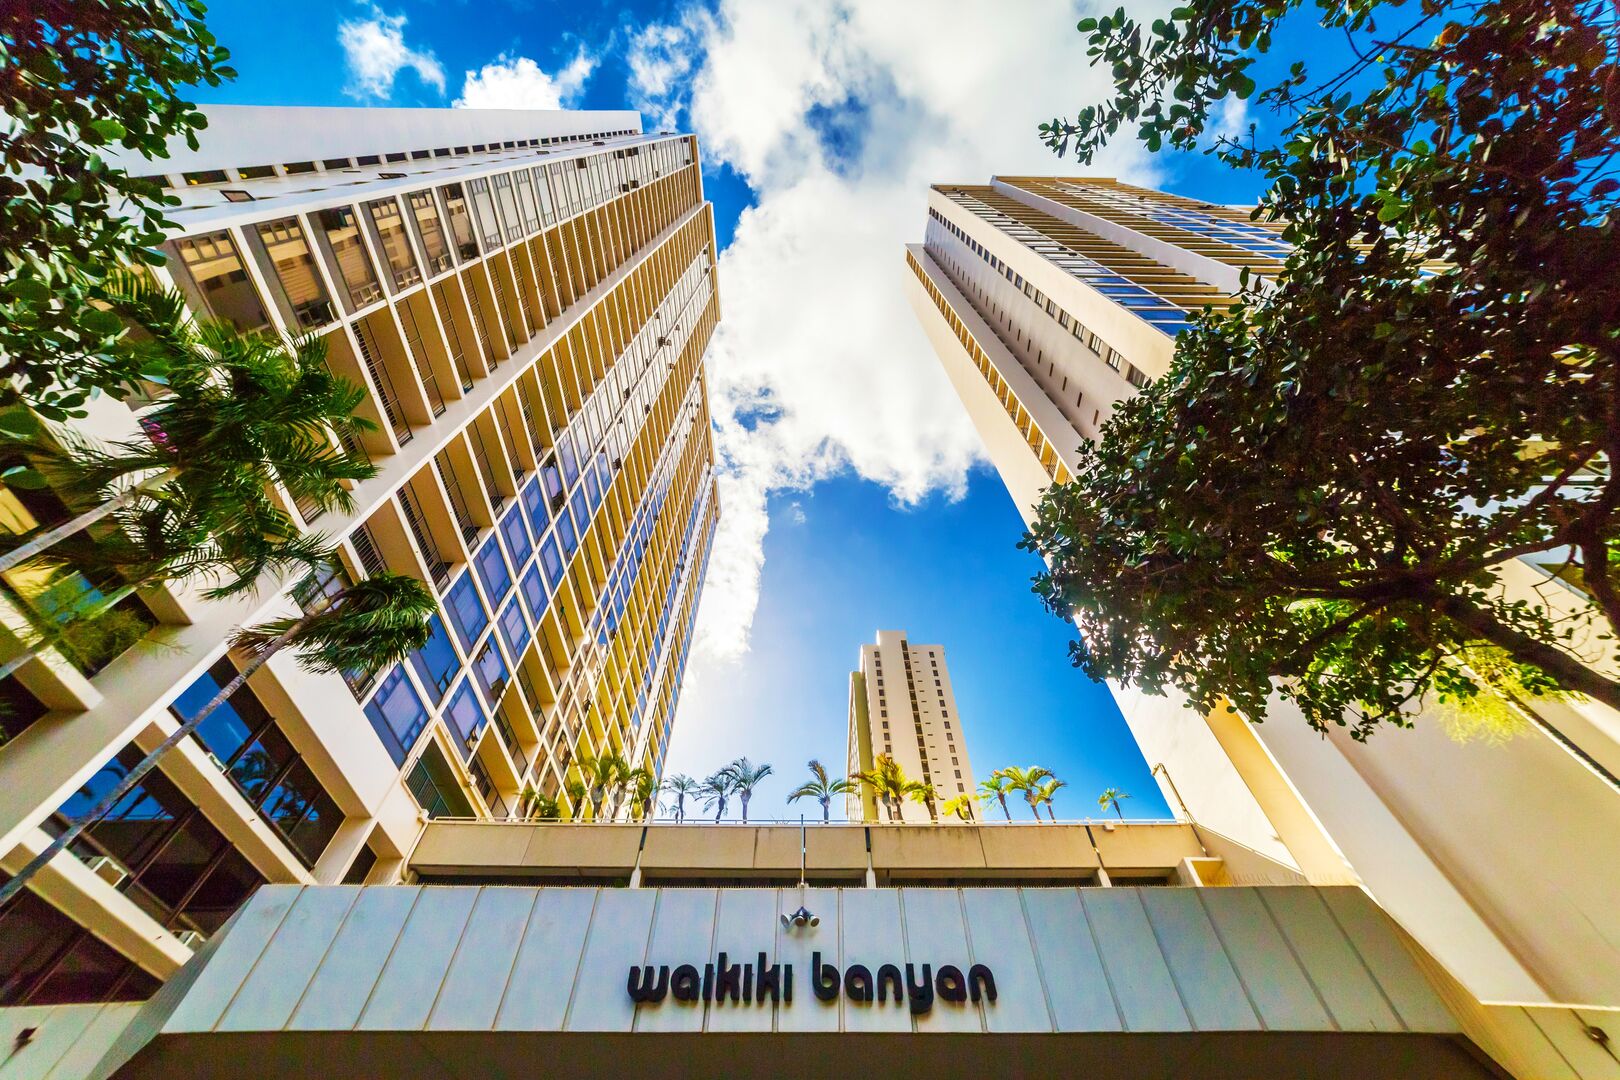 Waikiki Banyan entrance